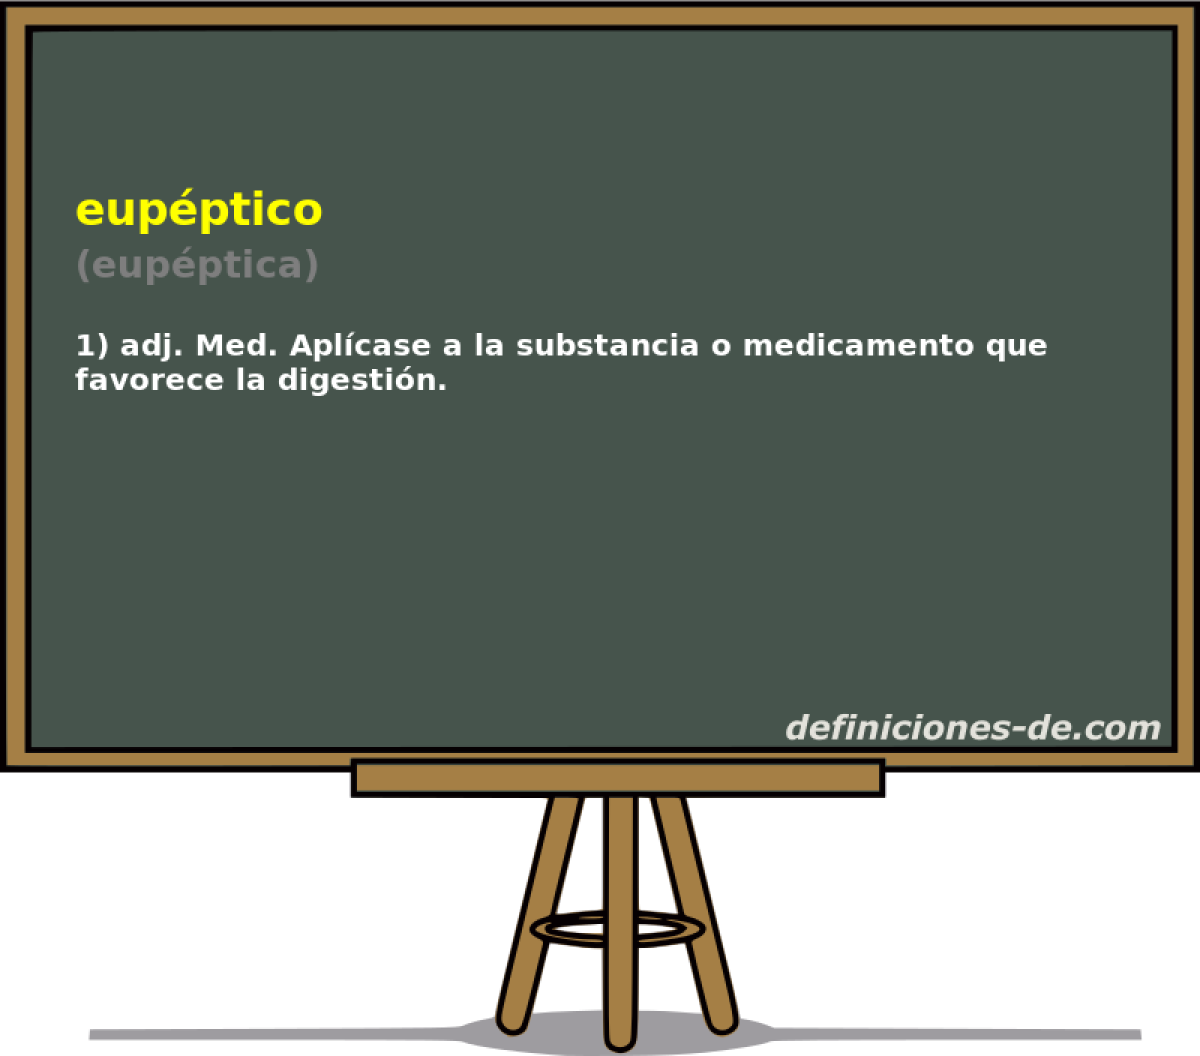 eupptico (eupptica)